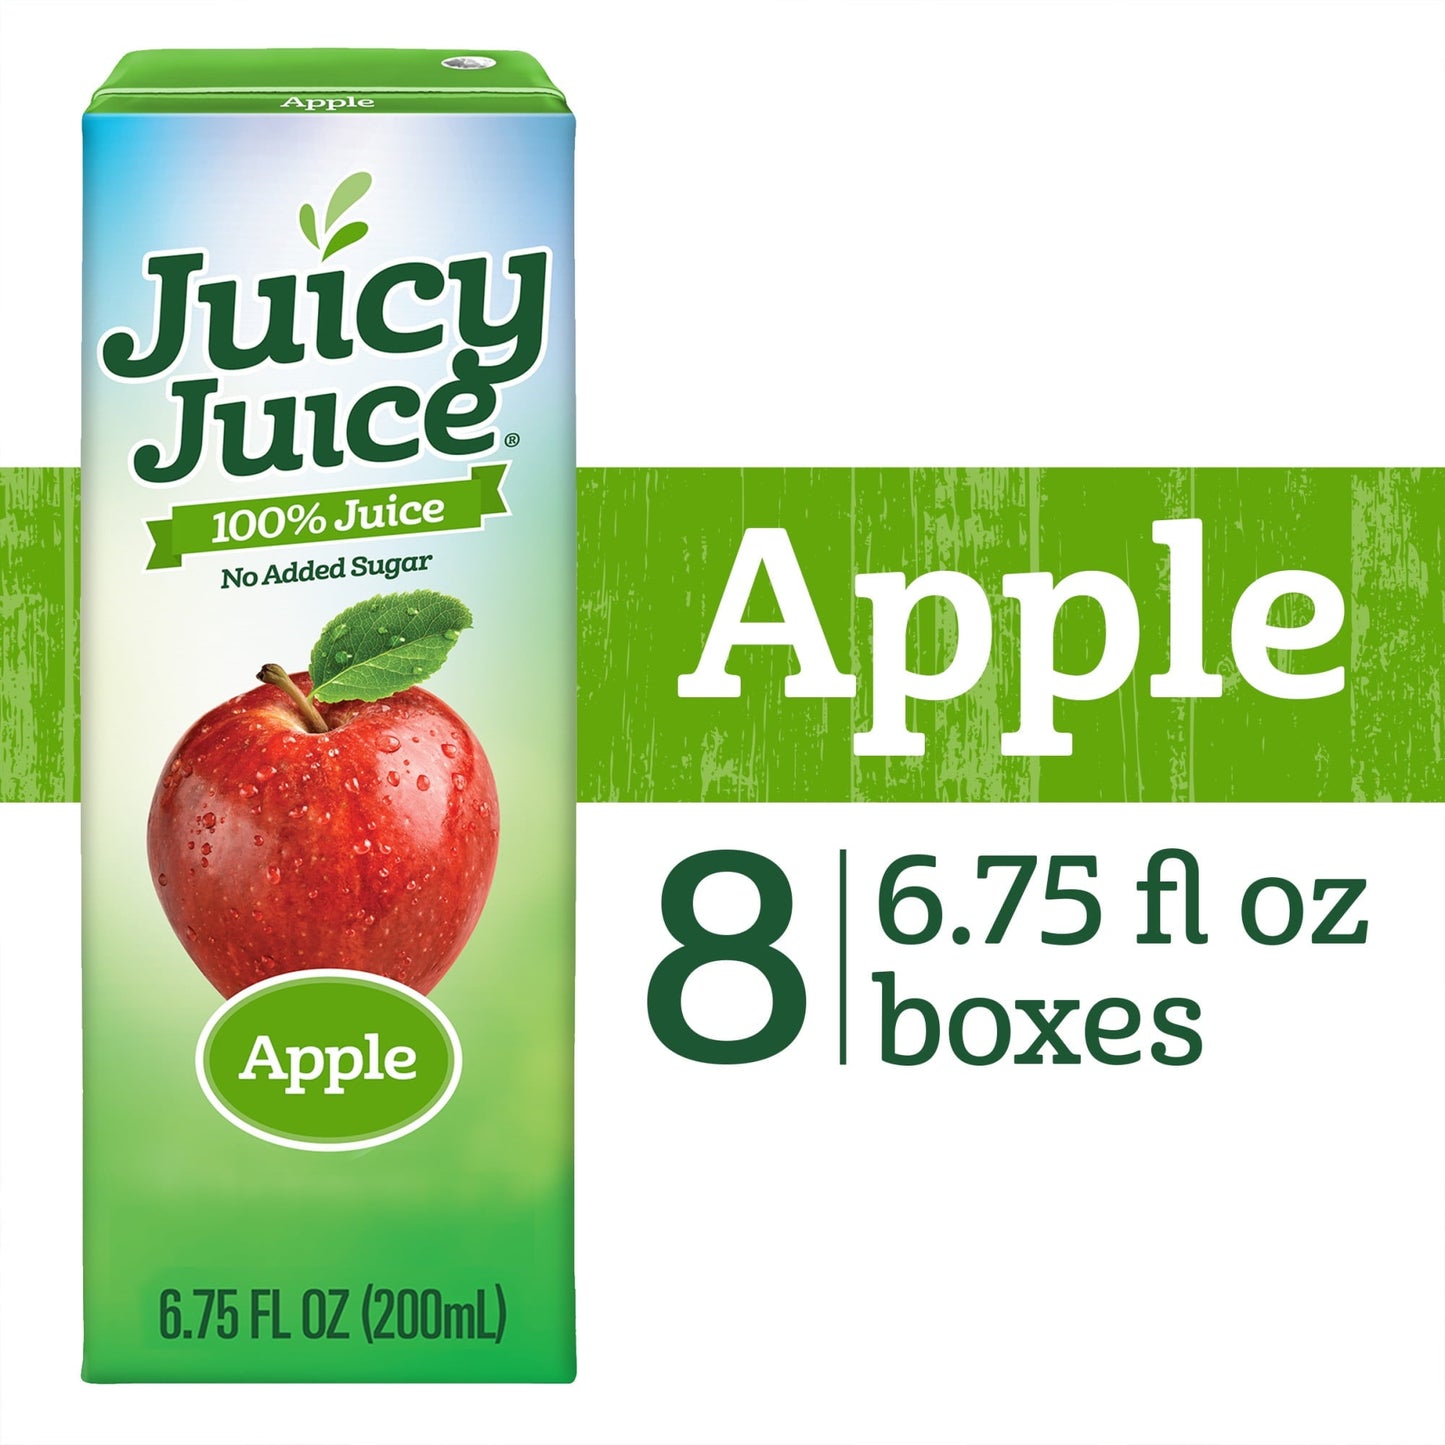 Juicy Juice 100% Juice, Apple Juice, 8 Count, 6.75 FL OZ Juice Boxes